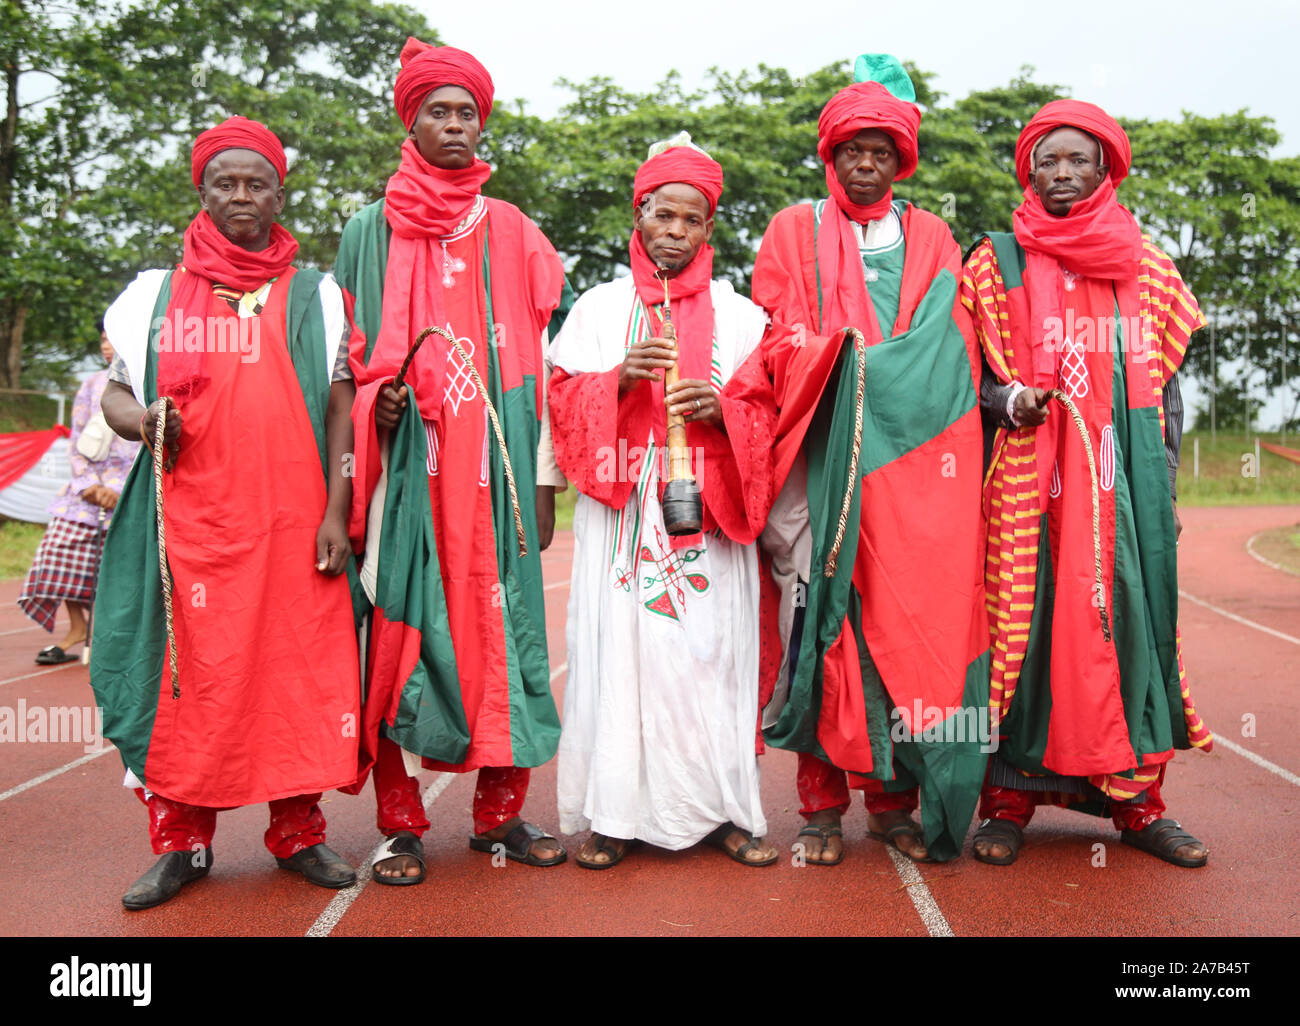 La tribu Hausa-Fulani du nord du Nigeria présente sa riche culture lors du Festival national des arts et de la culture (NAFEST) dans l'État d'Edo, au Nigeria. Banque D'Images